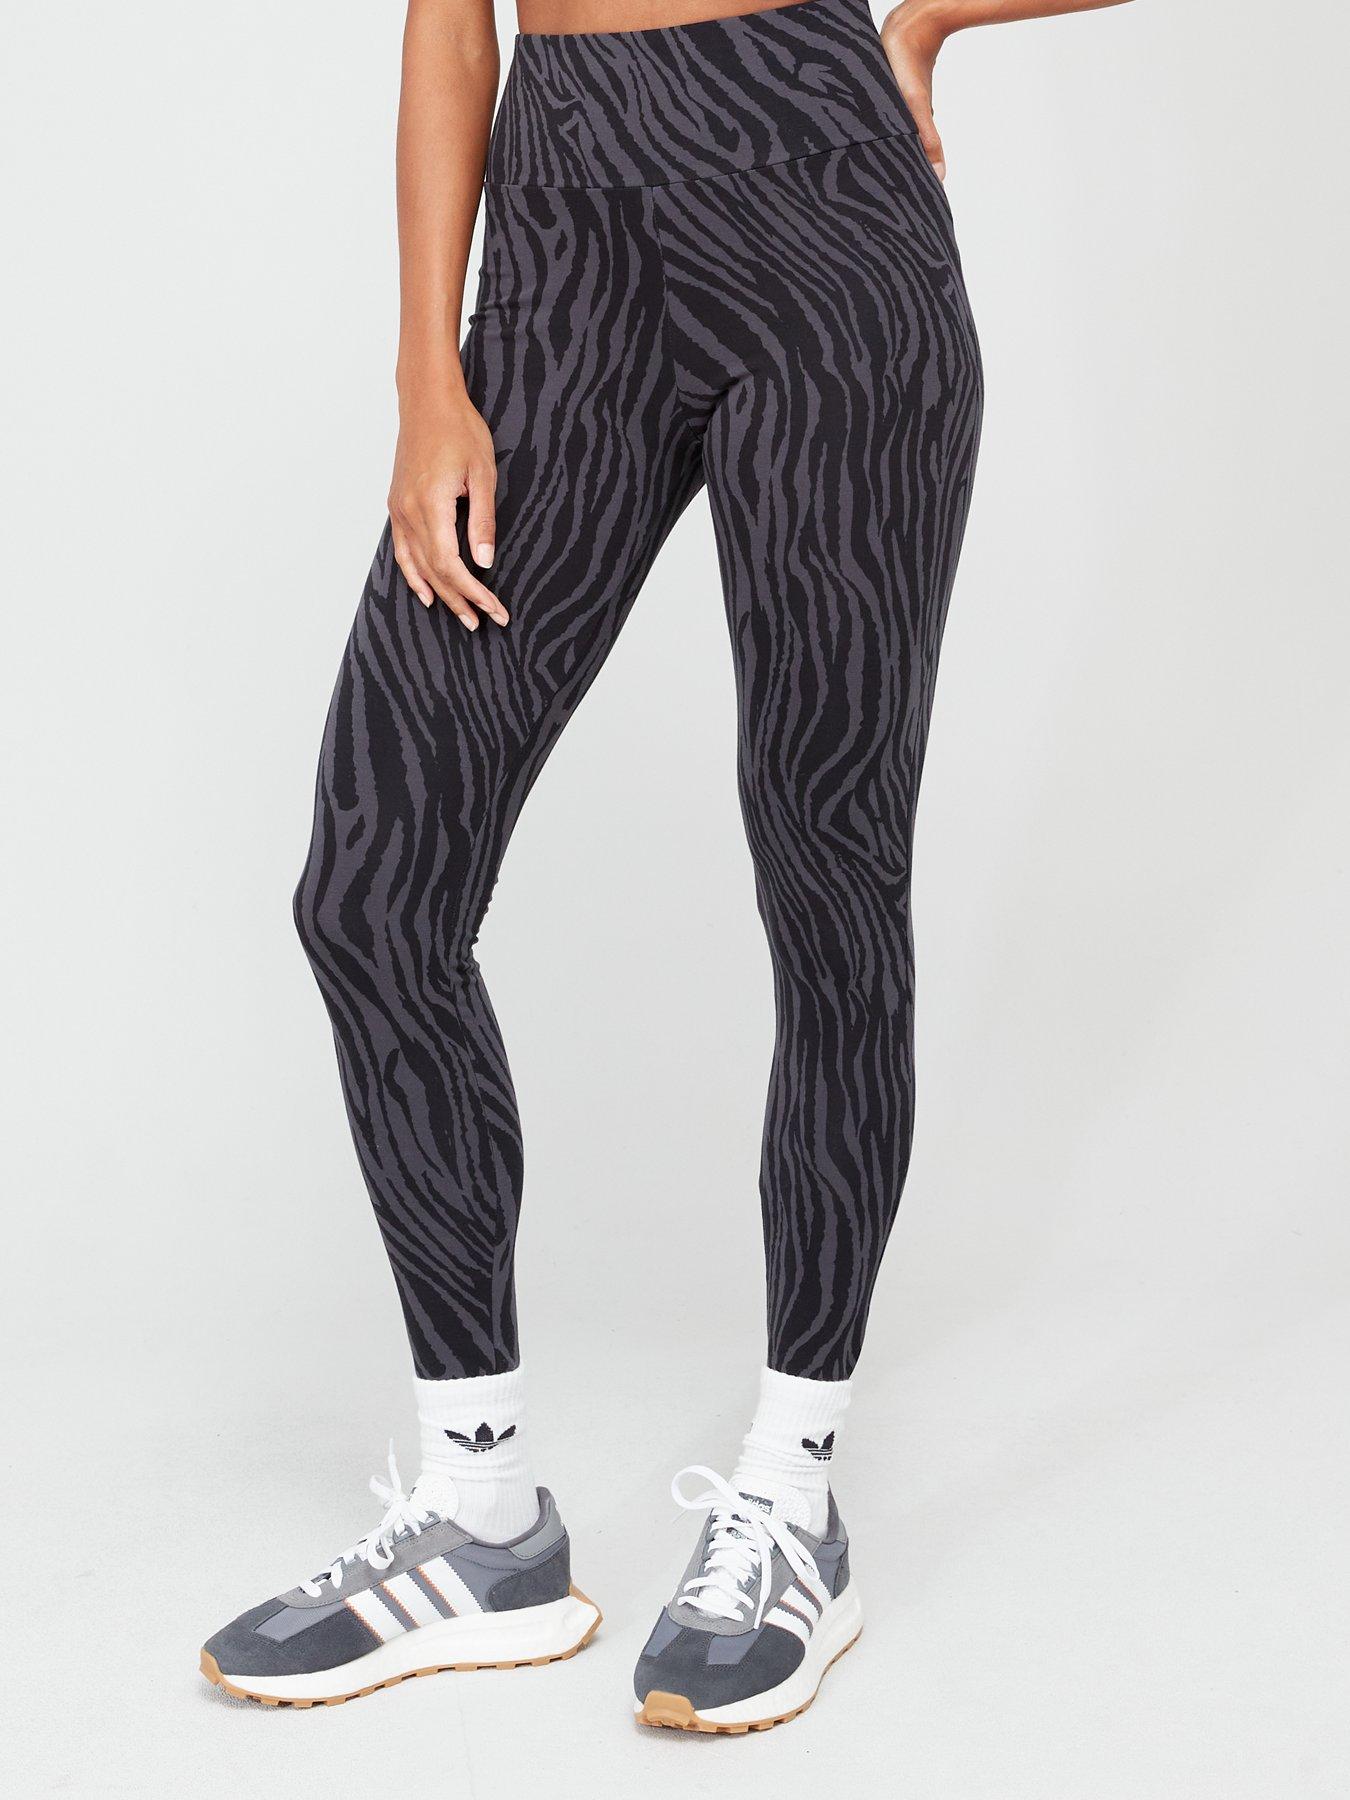 Women's Hyperglam Techfit Zebra High Waist Short, adidas